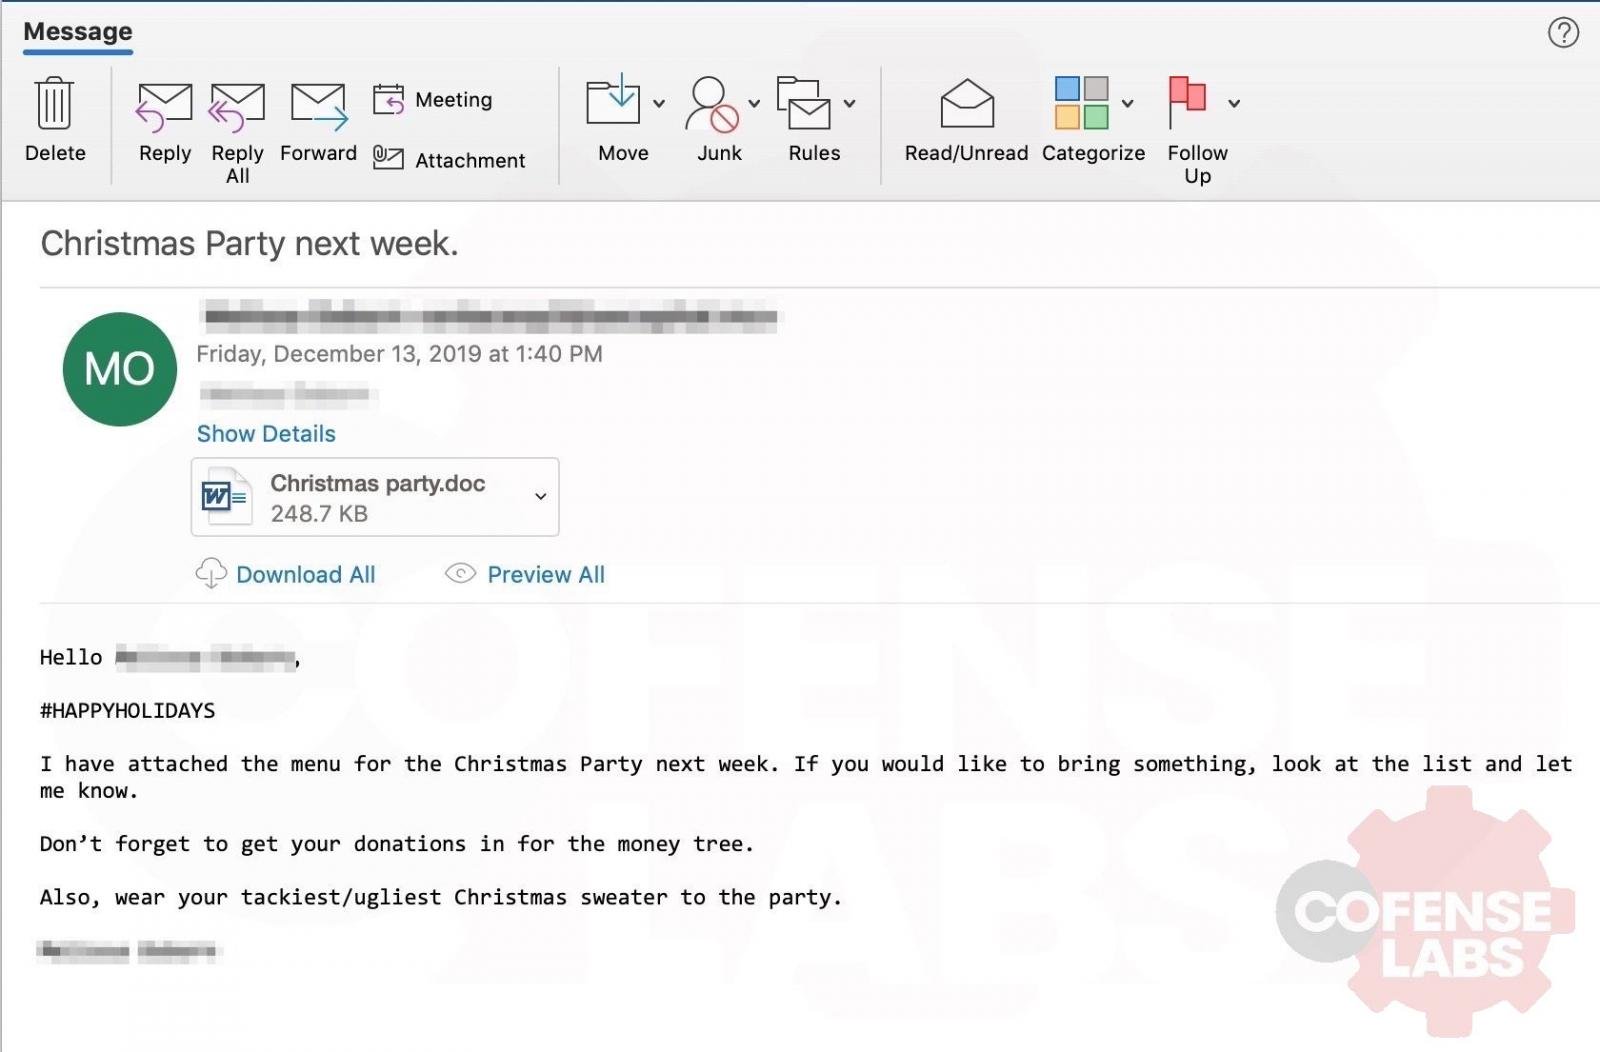 Oto przykład jak wygląda jeden z wysyłanych maili. - Świąteczny trojan – hakerzy zapraszają na imprezę - wiadomość - 2019-12-17